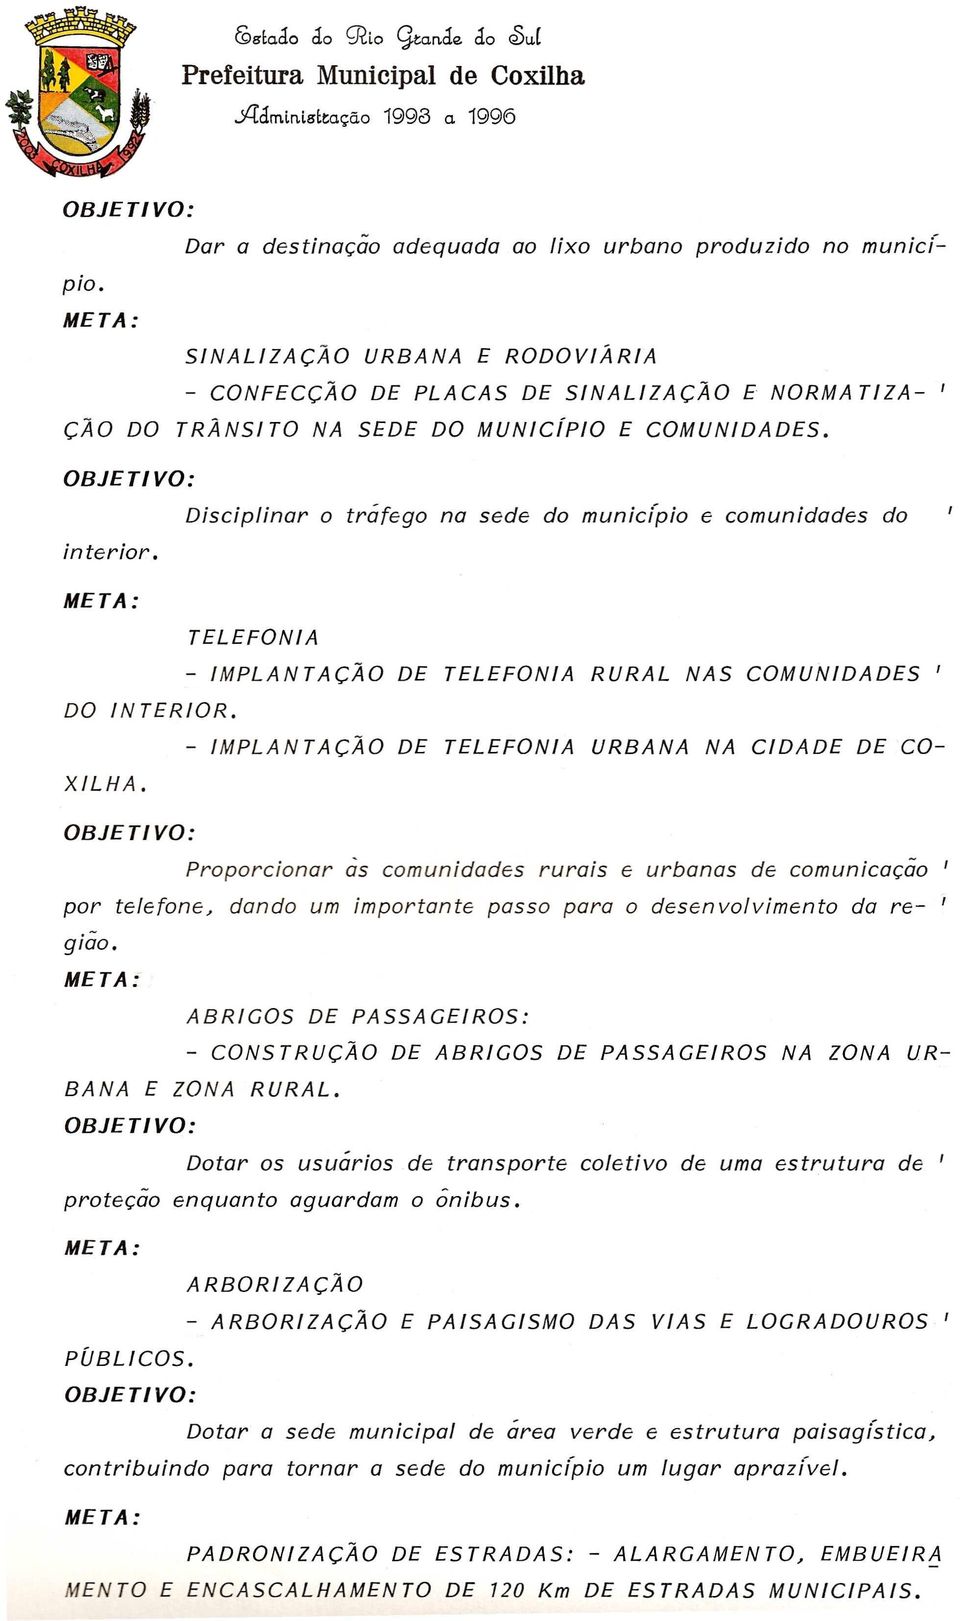 Disciplinar a trafego na sede do municipio e comunidades do TELEFONIA - IMPLANTACAO DE TELEFONIA RURAL NAS COMUNIDADES I DO INTERIOR.